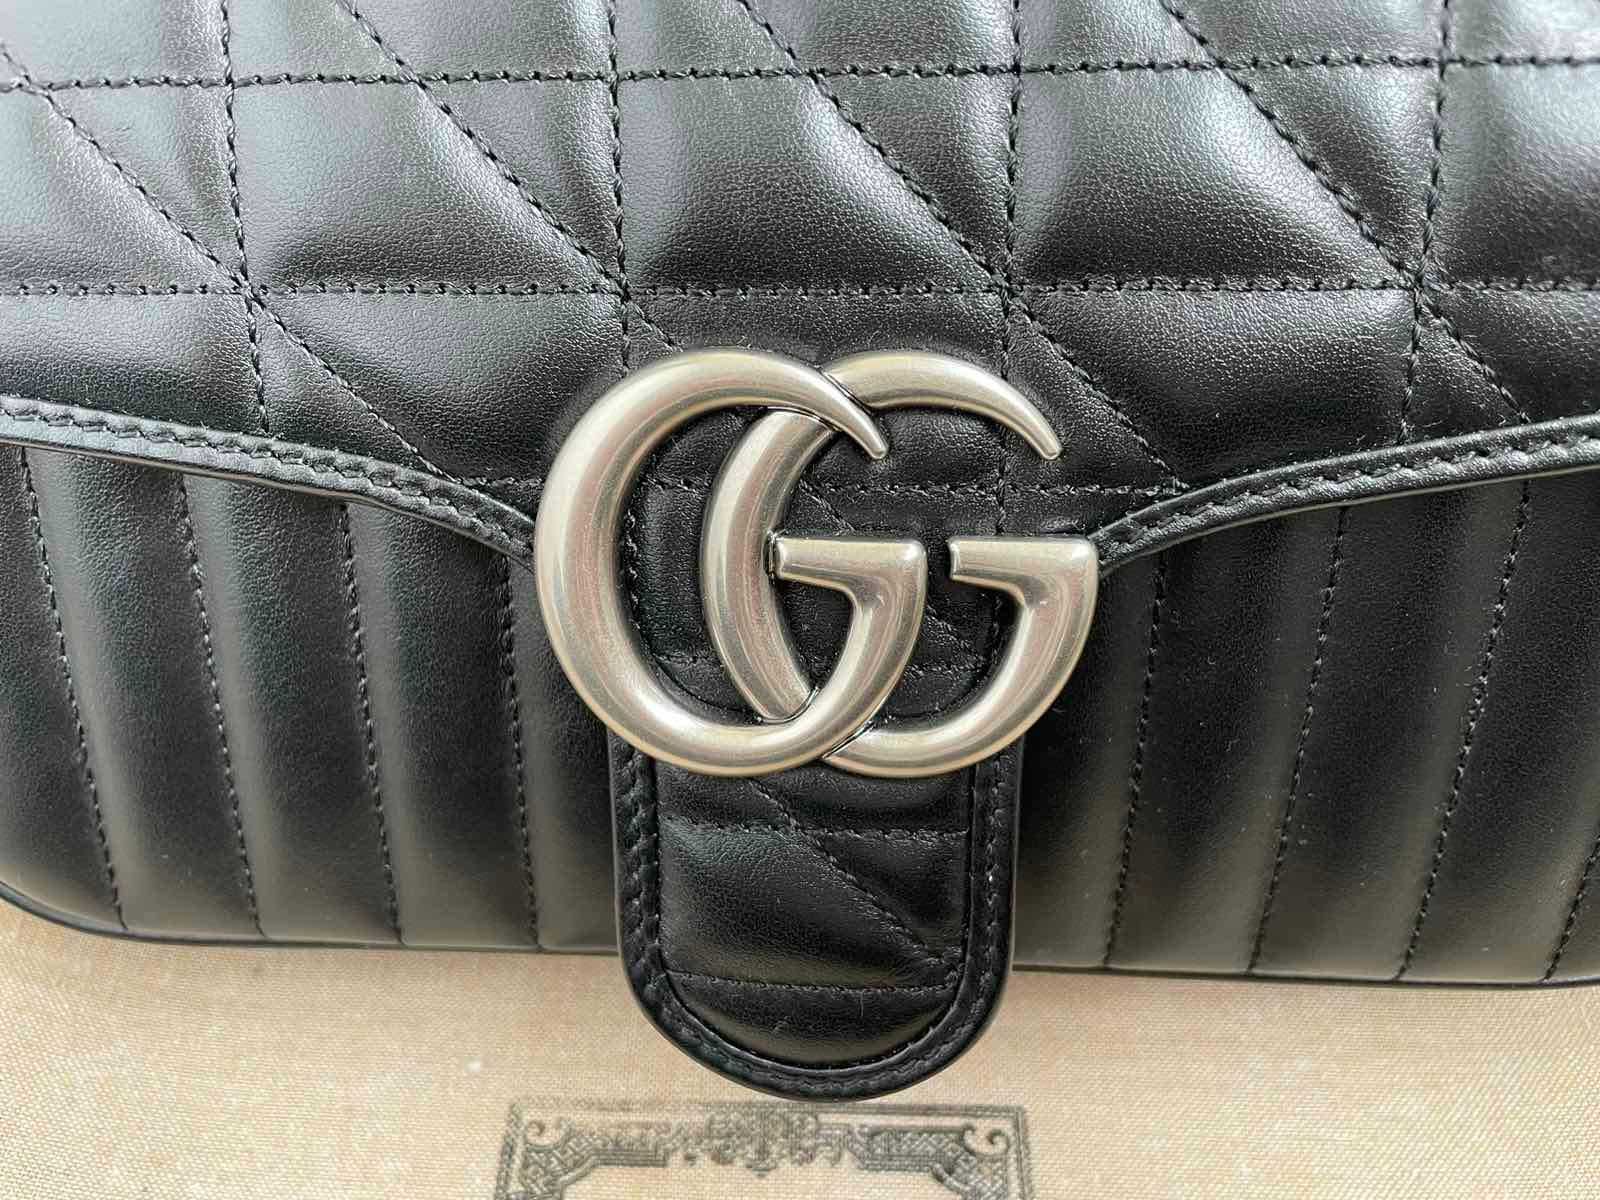 Geantă Gucci din piele neagră originală Gucci Marmont, mâner și lanț